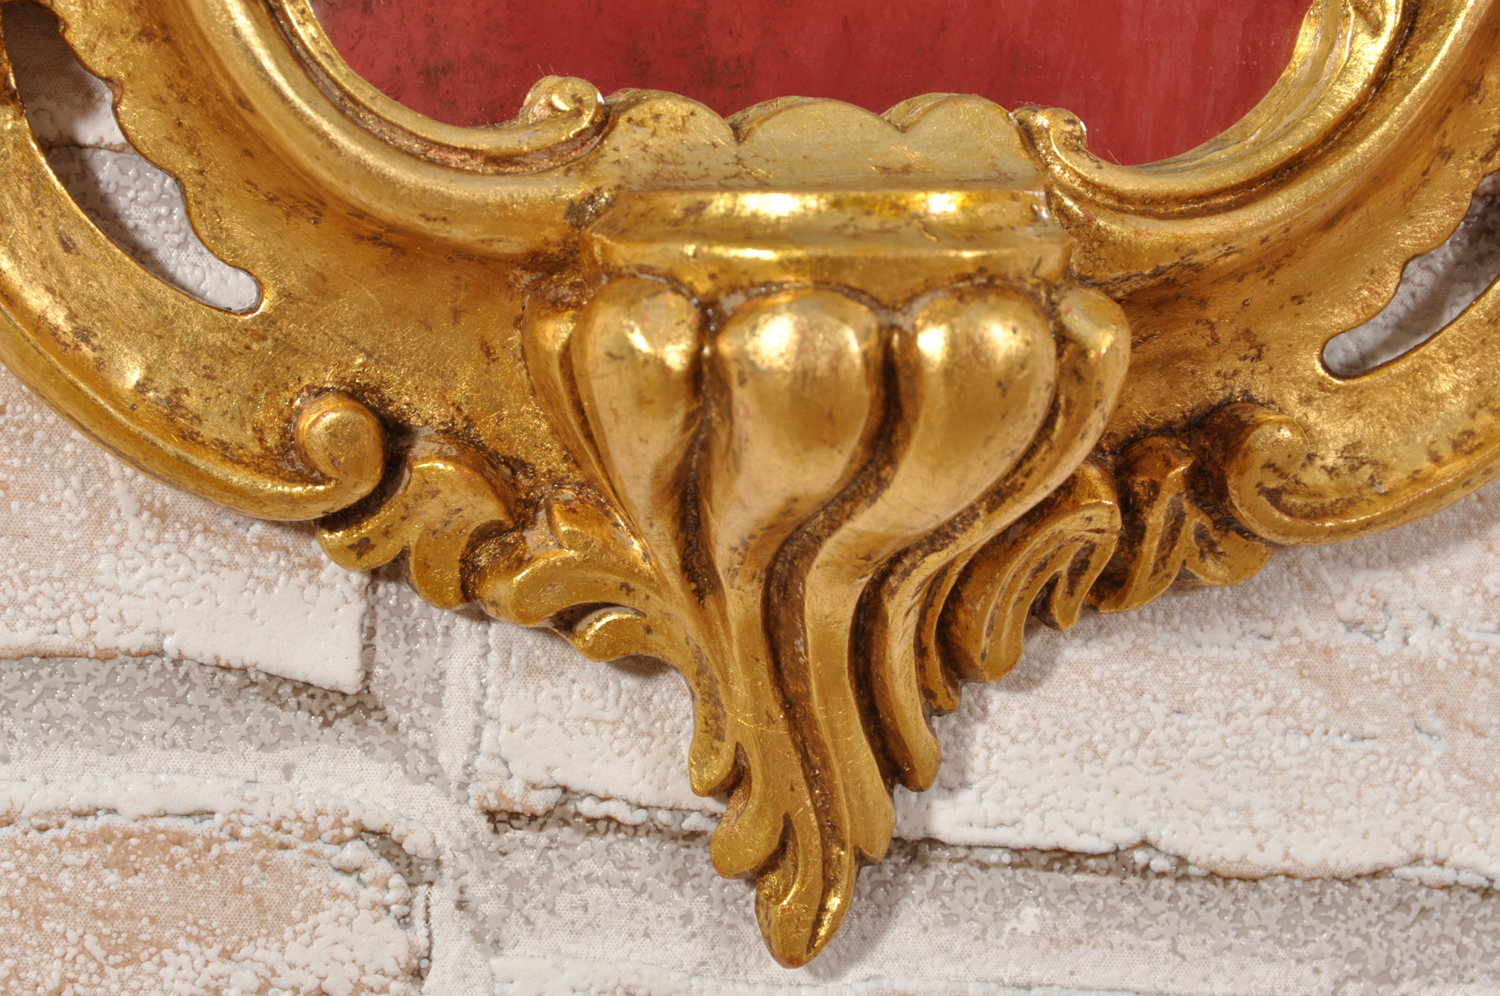 ventola specchiera veneziana del XVIII secolo intagliata e scolpita a mano con doratura in foglia oro costruita dal brand di lusso Vangelista come il modello originale prodotto nelle botteghe veneziane